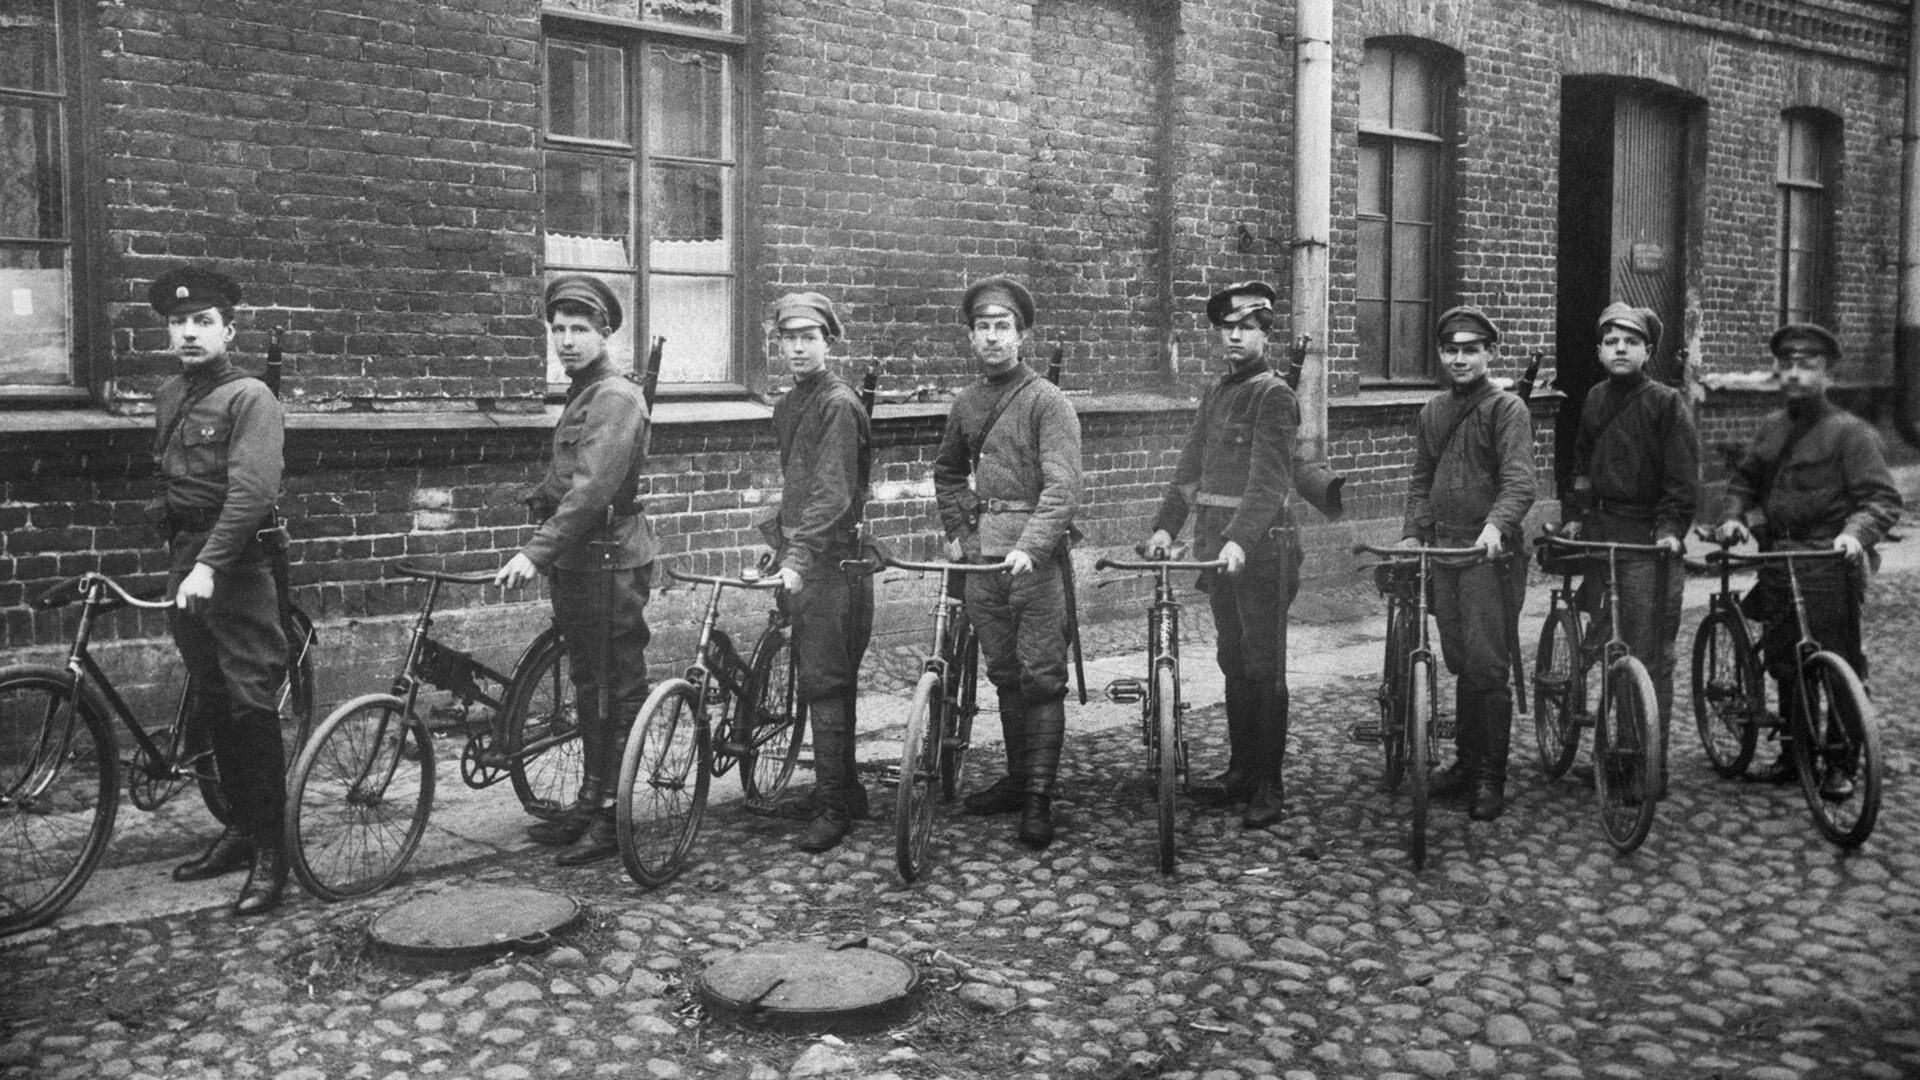 Outubro de 1918 RSFSR. Petrogrado. Membros da equipe militar de ciclistas sob a administração do Conselho de Comissários do Povo em uma das ruas da cidade durante a Guerra Civil.